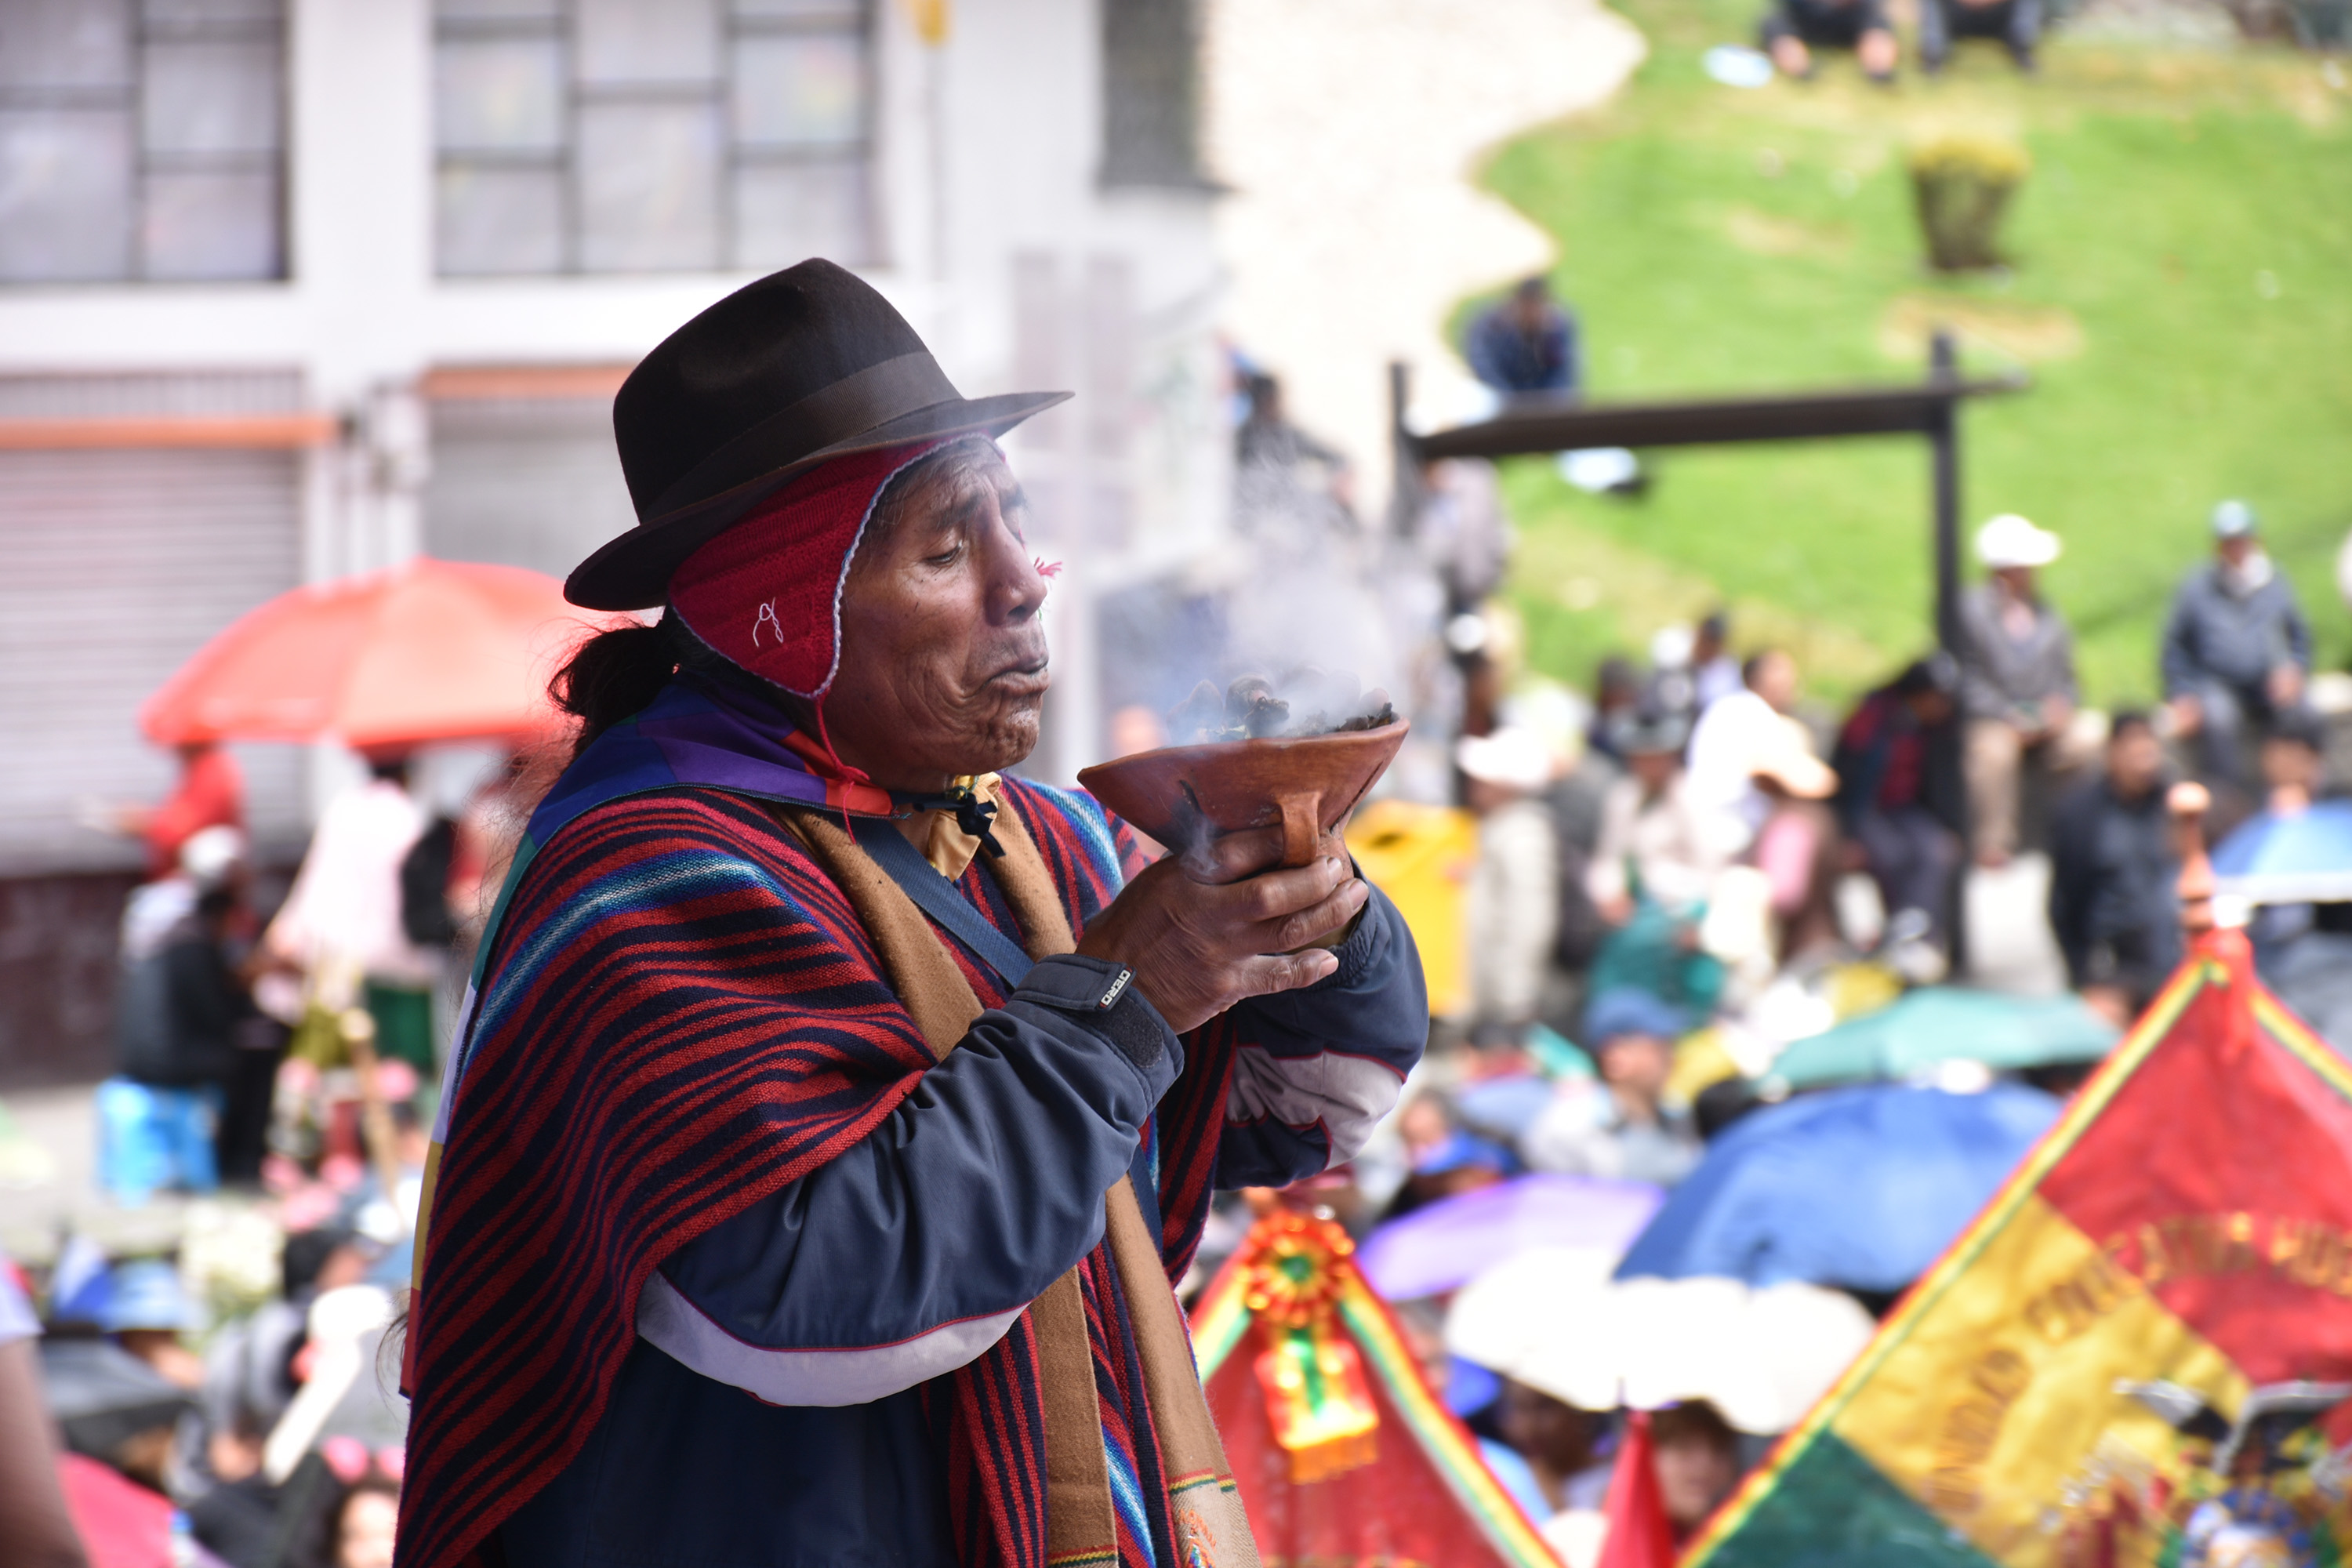 ¿Qué ha significado para los pueblos indígenas el oncenio del gobierno de Evo Morales?